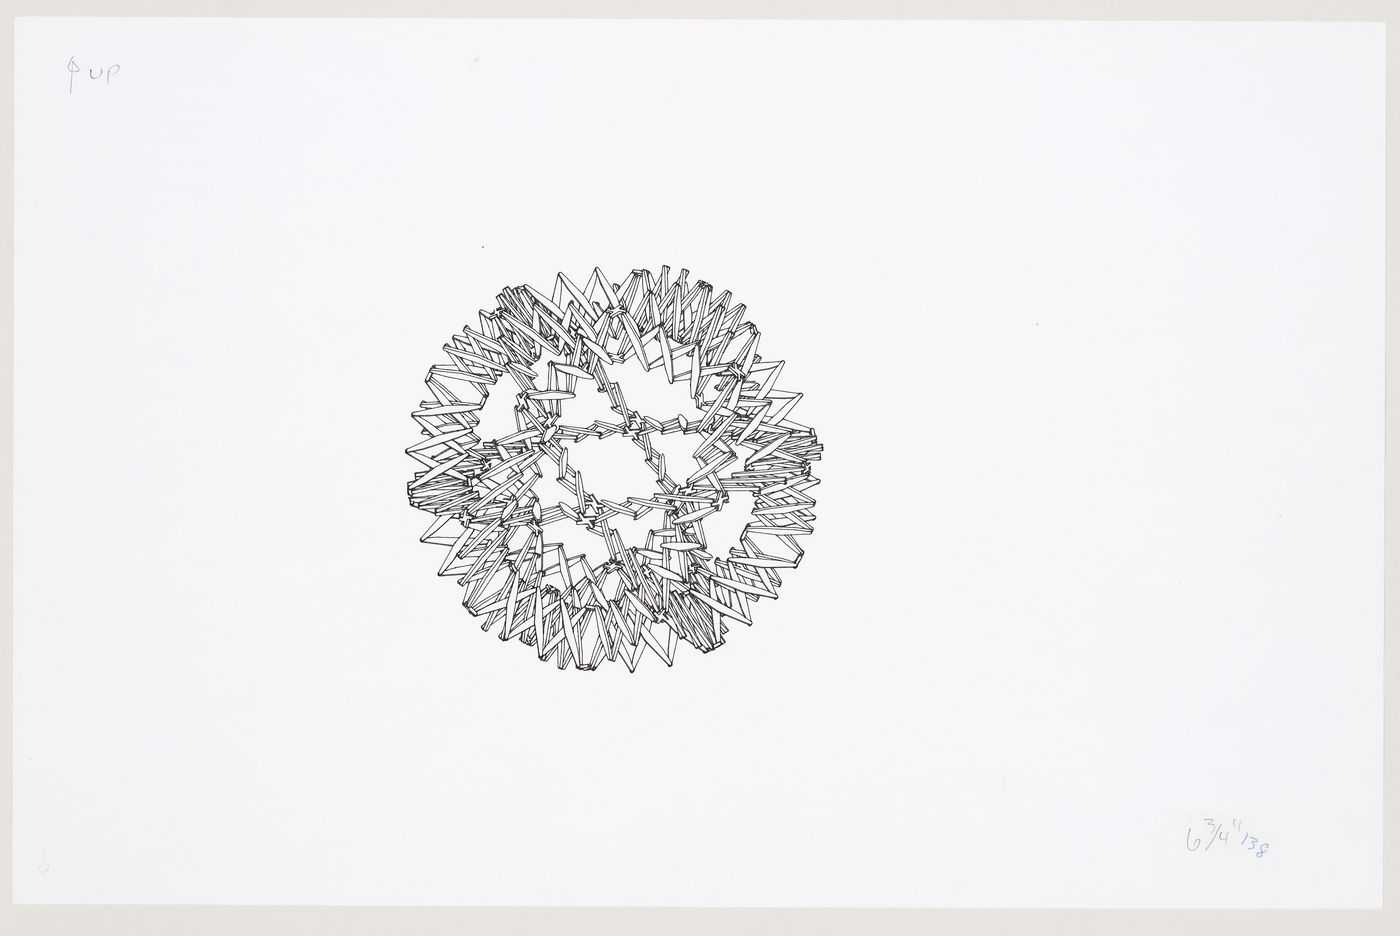 Drawings of Hoberman Sphere